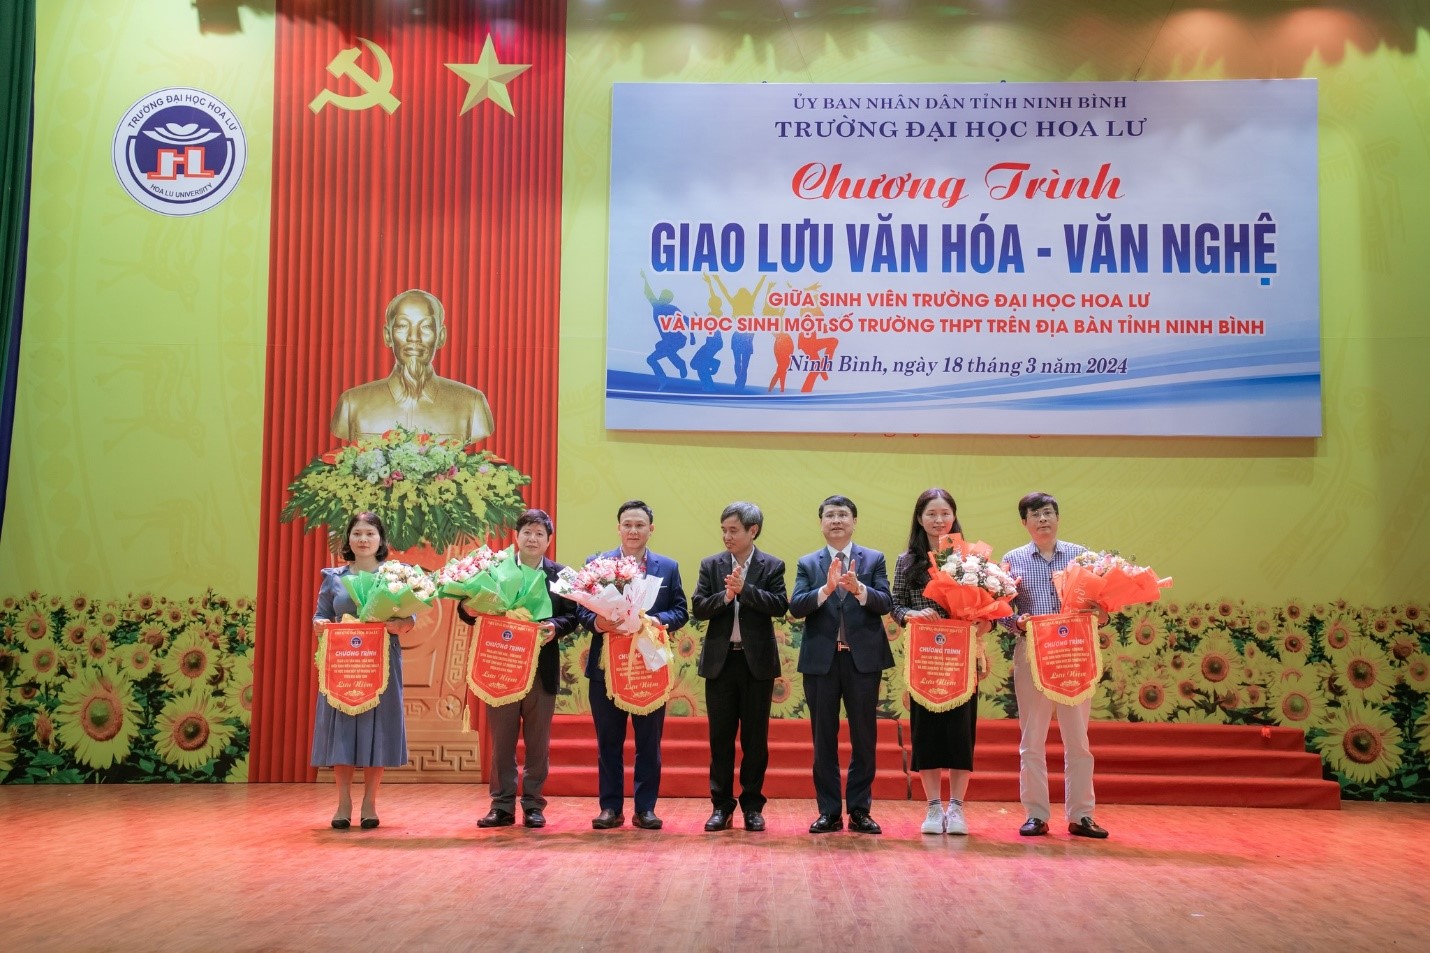 Chương trình giao lưu văn hóa - văn nghệ giữa Trường Đại học Hoa Lư và một số trường THPT trên địa bàn tỉnh Ninh Bình